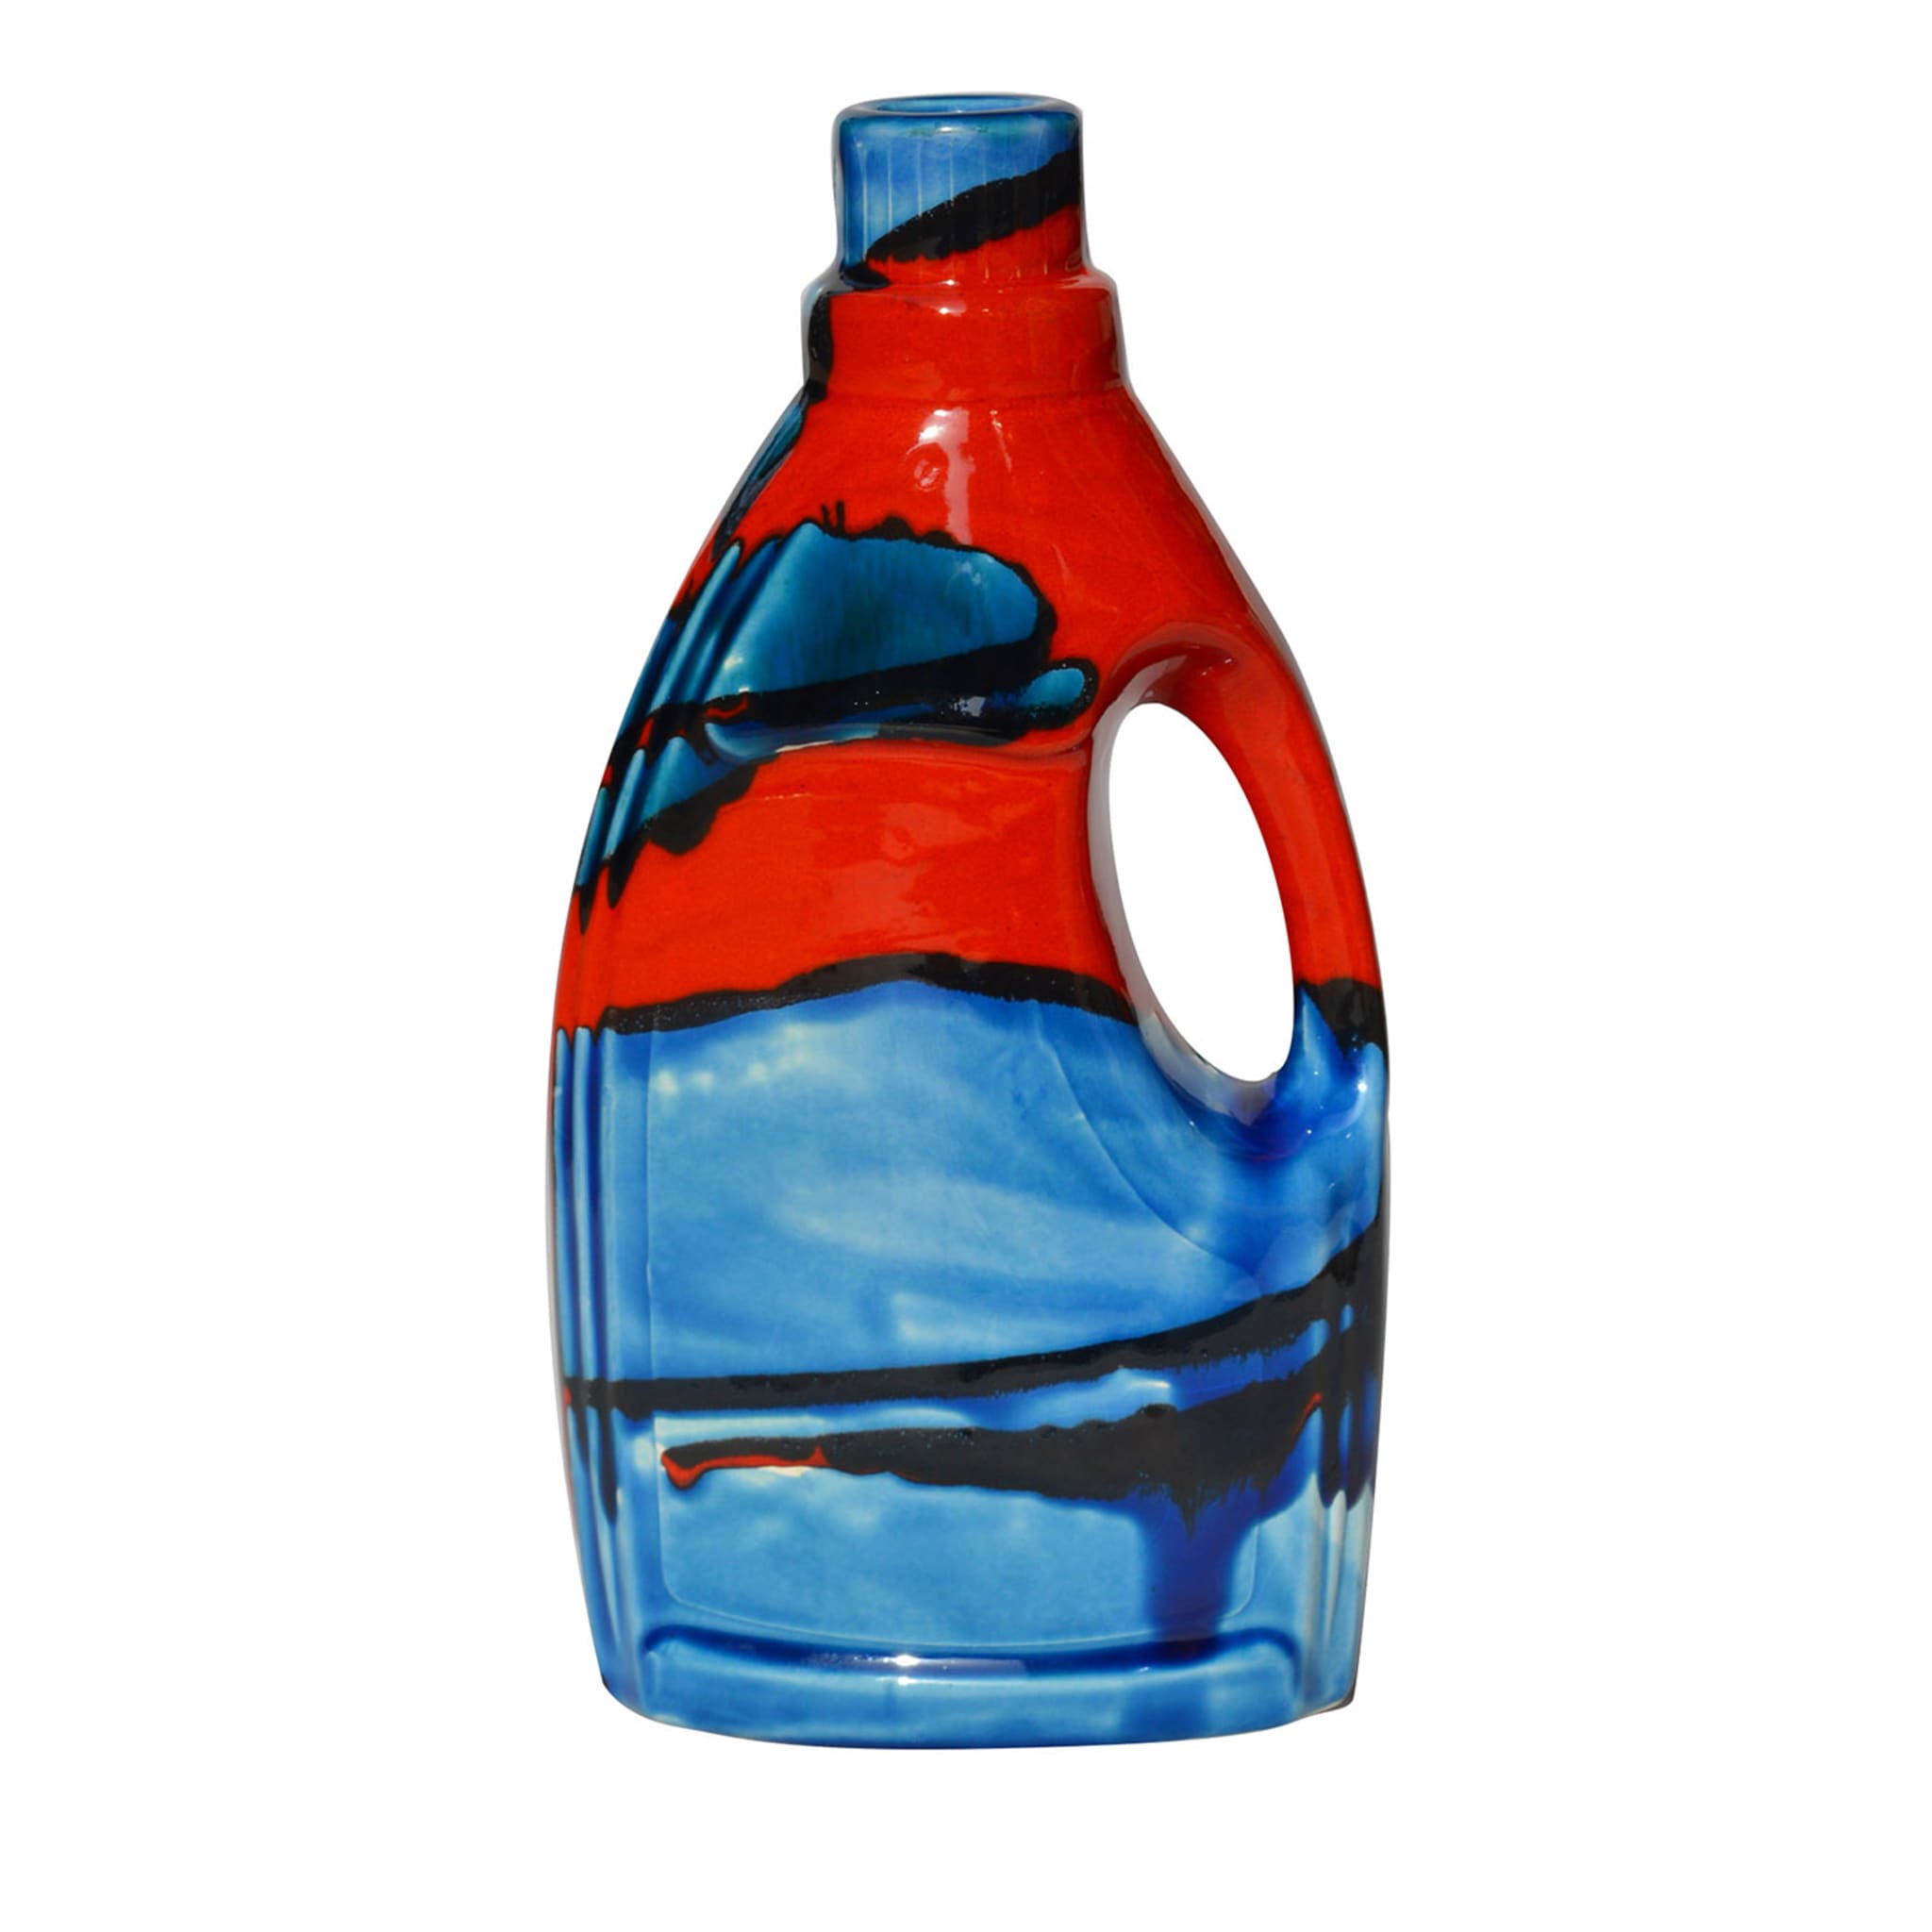 Più argilla meno plastica Bottiglia blu e rossa - Vista principale